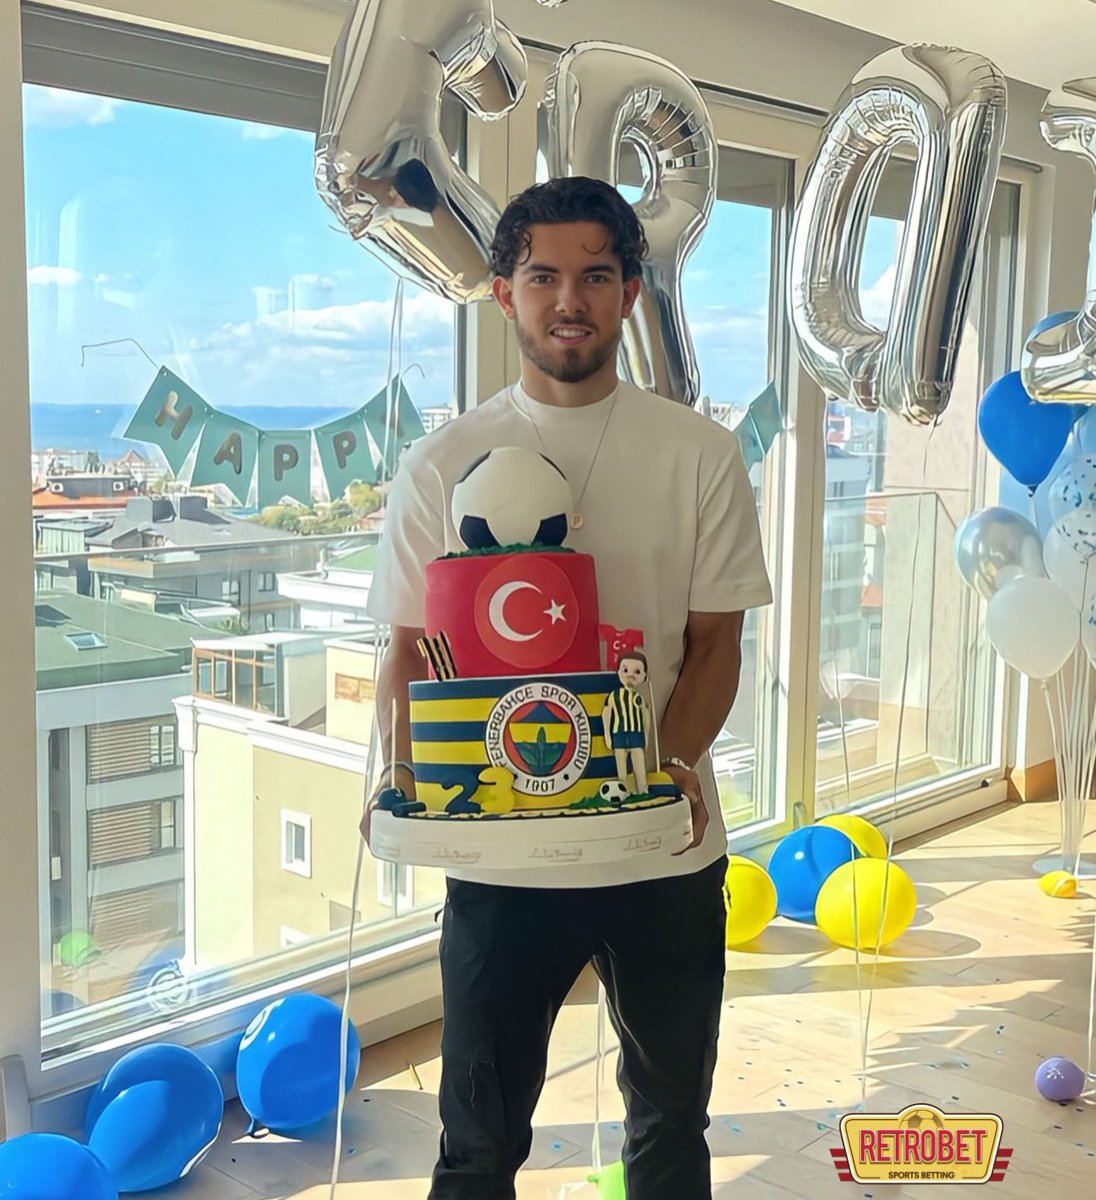 🔥Ferdi Kadıoğlu, Premier Lig kulüplerinden Brighton’ın transfer listesine girdi. (Sporx)

•Fenerbahçe’nin beklentisi 20 Milyon Euro.